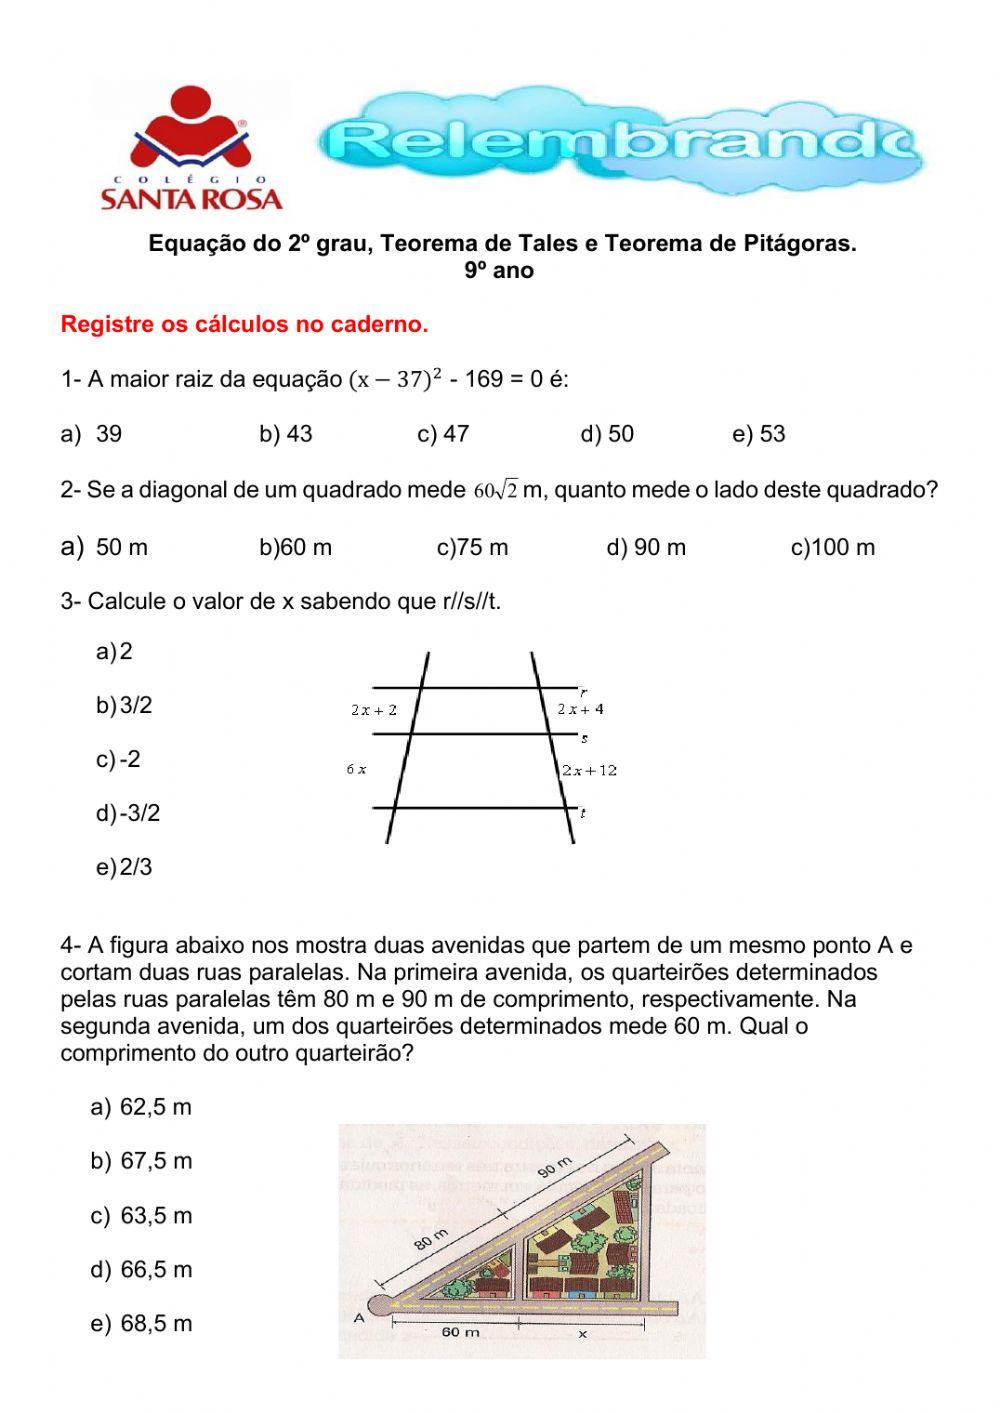 Relembrando- Equação do 2º grau, Teorema de Tales e Teorema de Pitágoras